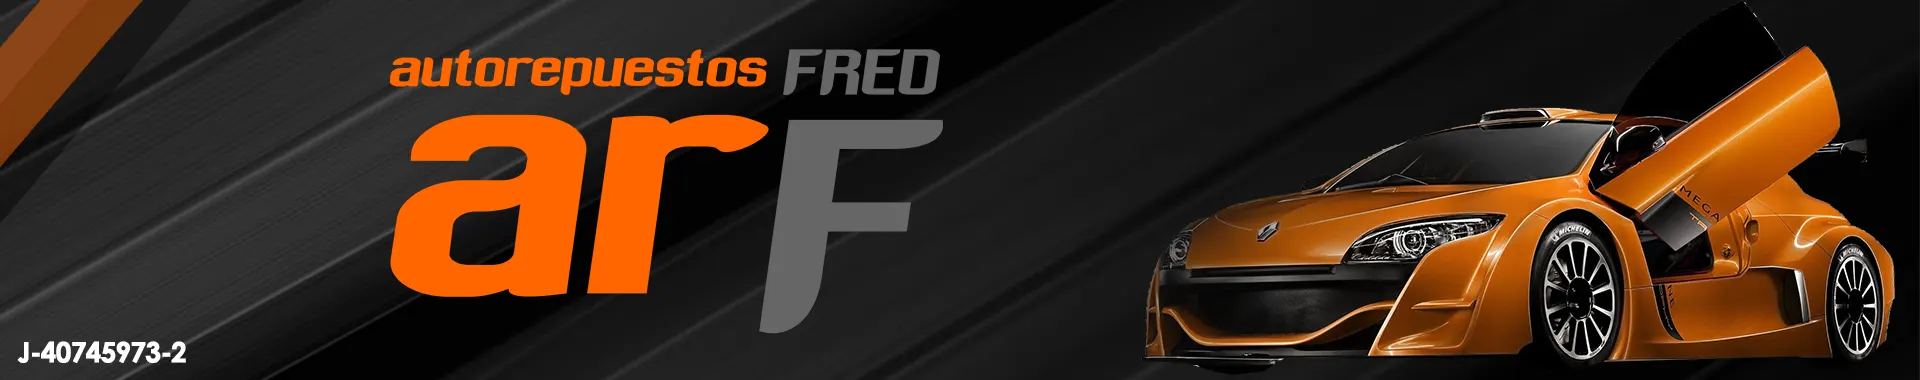 Imagen 1 del perfil de Auto Repuestos Fred